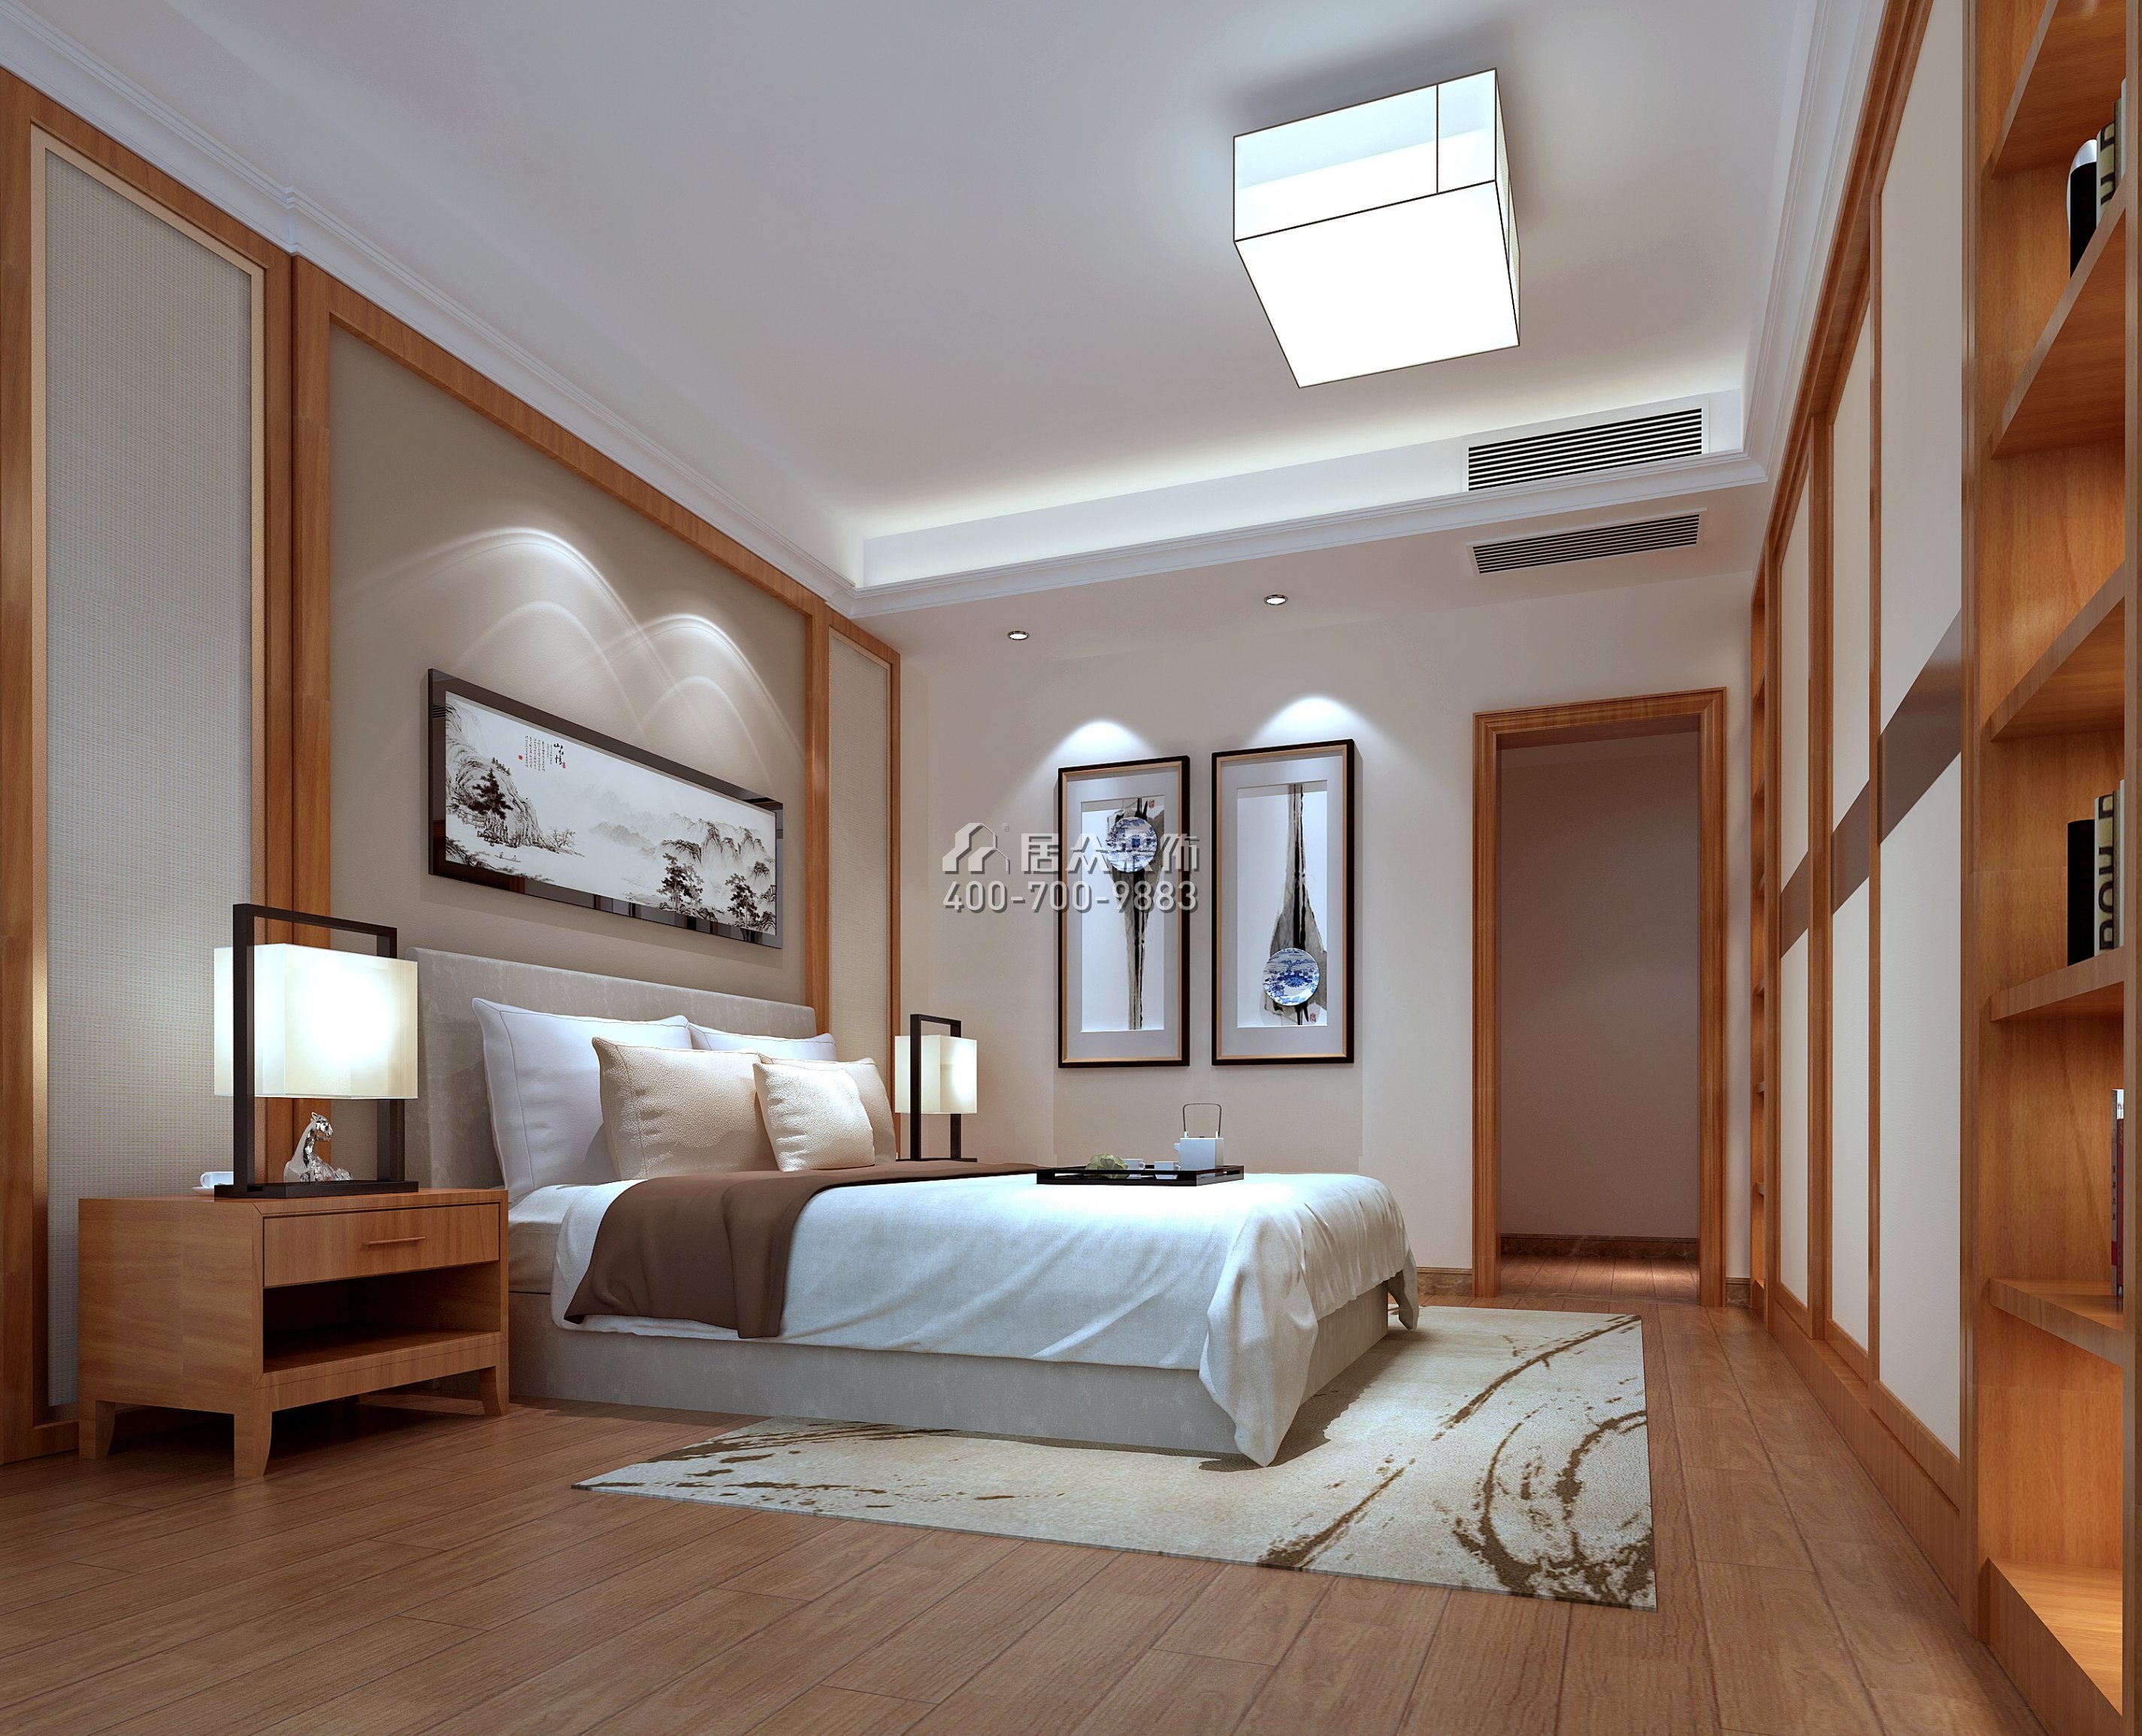 半島1號360平方米中式風格復式戶型臥室裝修效果圖